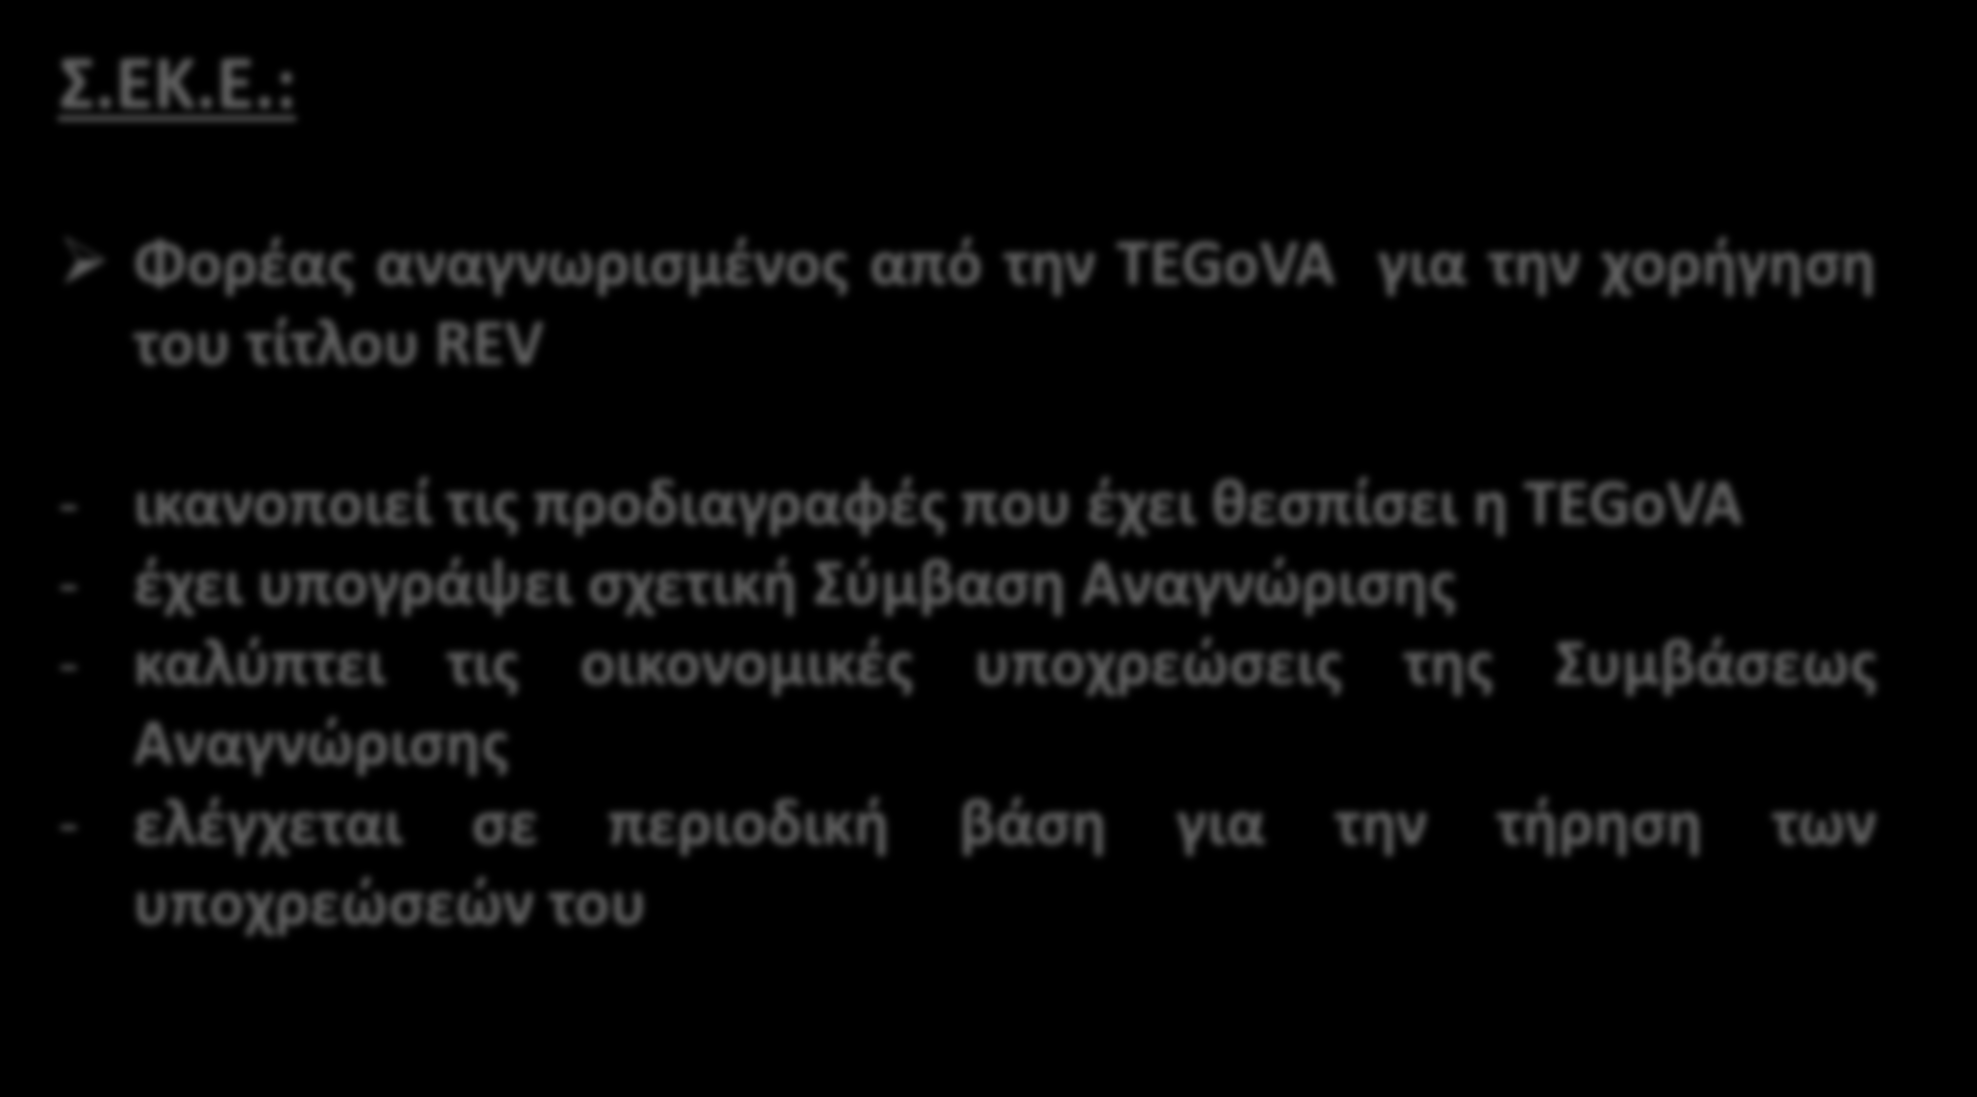 Σ.ΕΚ.Ε.: Διαδικασία Πιστοποίησης Φορέας αναγνωρισμένος από την TEGoVA για την χορήγηση του τίτλου REV - ικανοποιεί τις προδιαγραφές που έχει θεσπίσει η TEGoVA - έχει